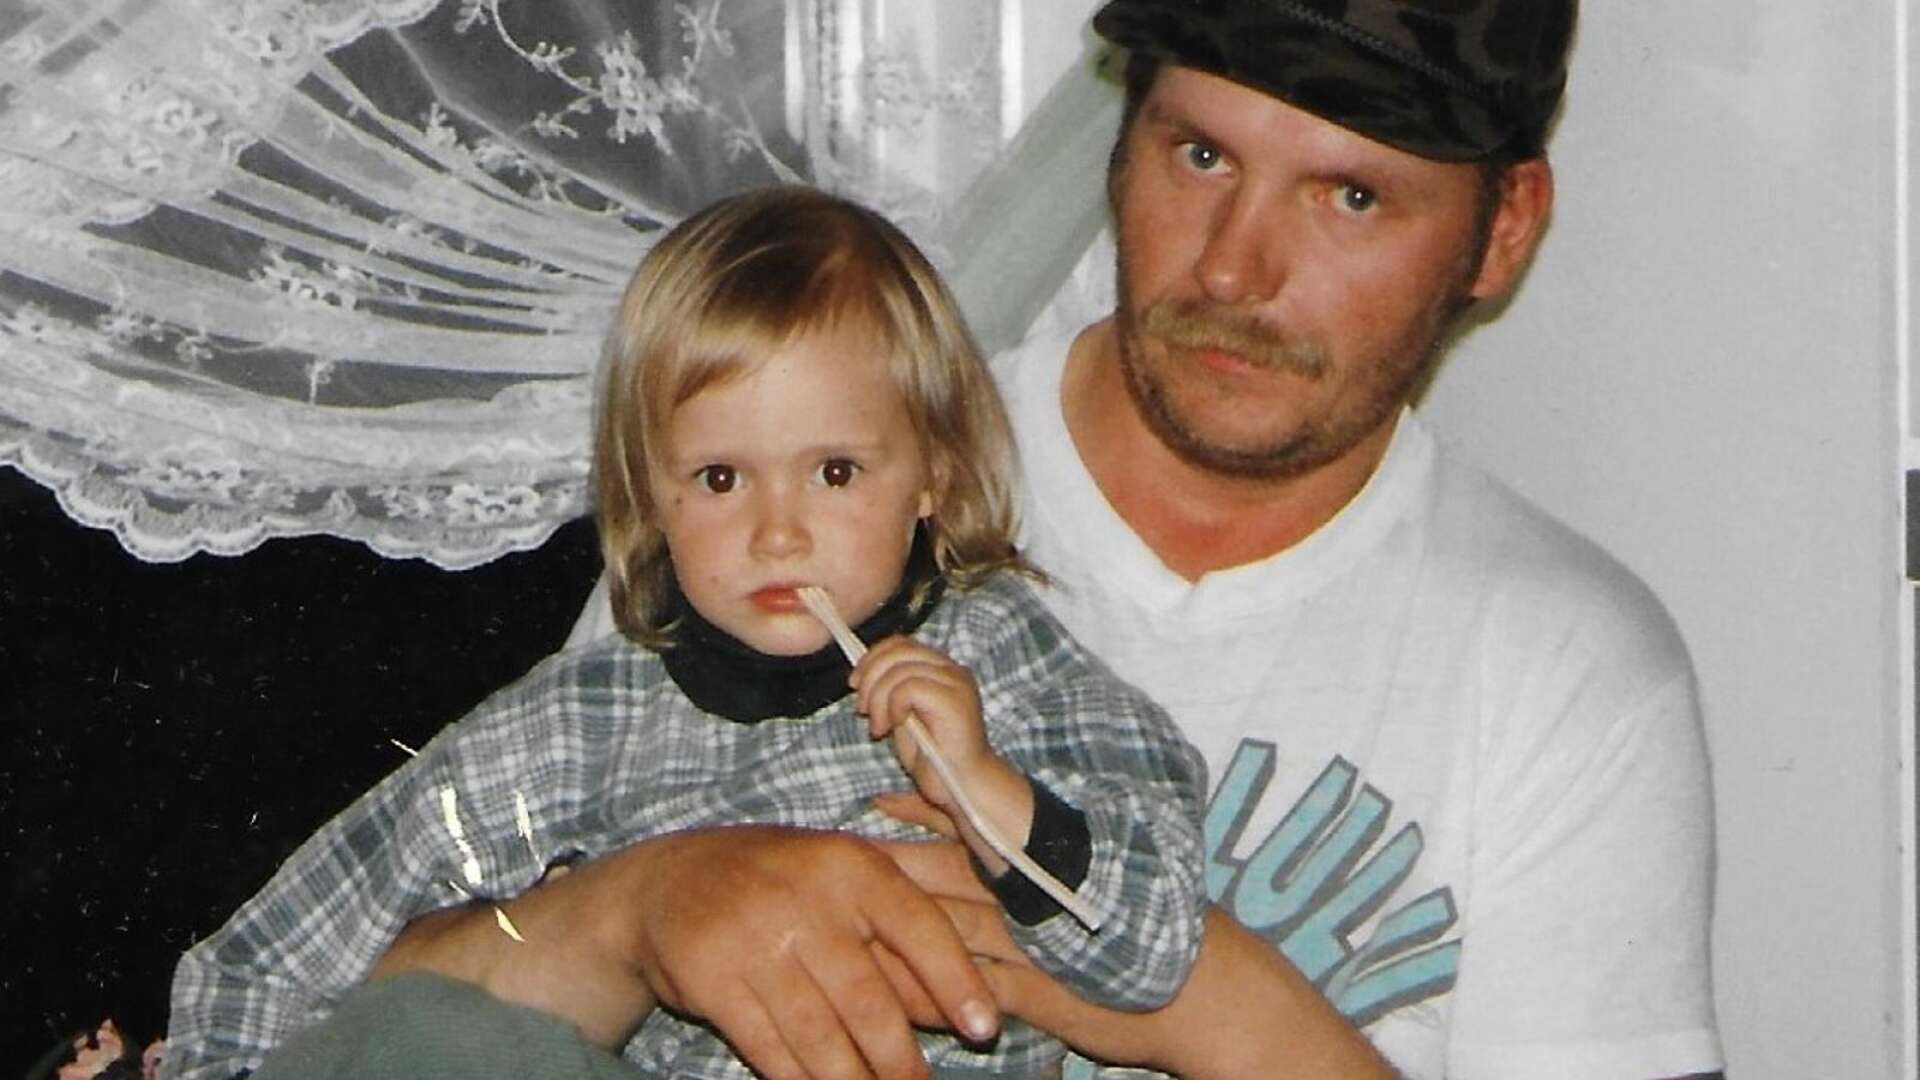 Tidigare skogsarbetaren Kari Ylioja, 58, hittades mördad i ett hus i Lesjöfors i slutet av november 2020.